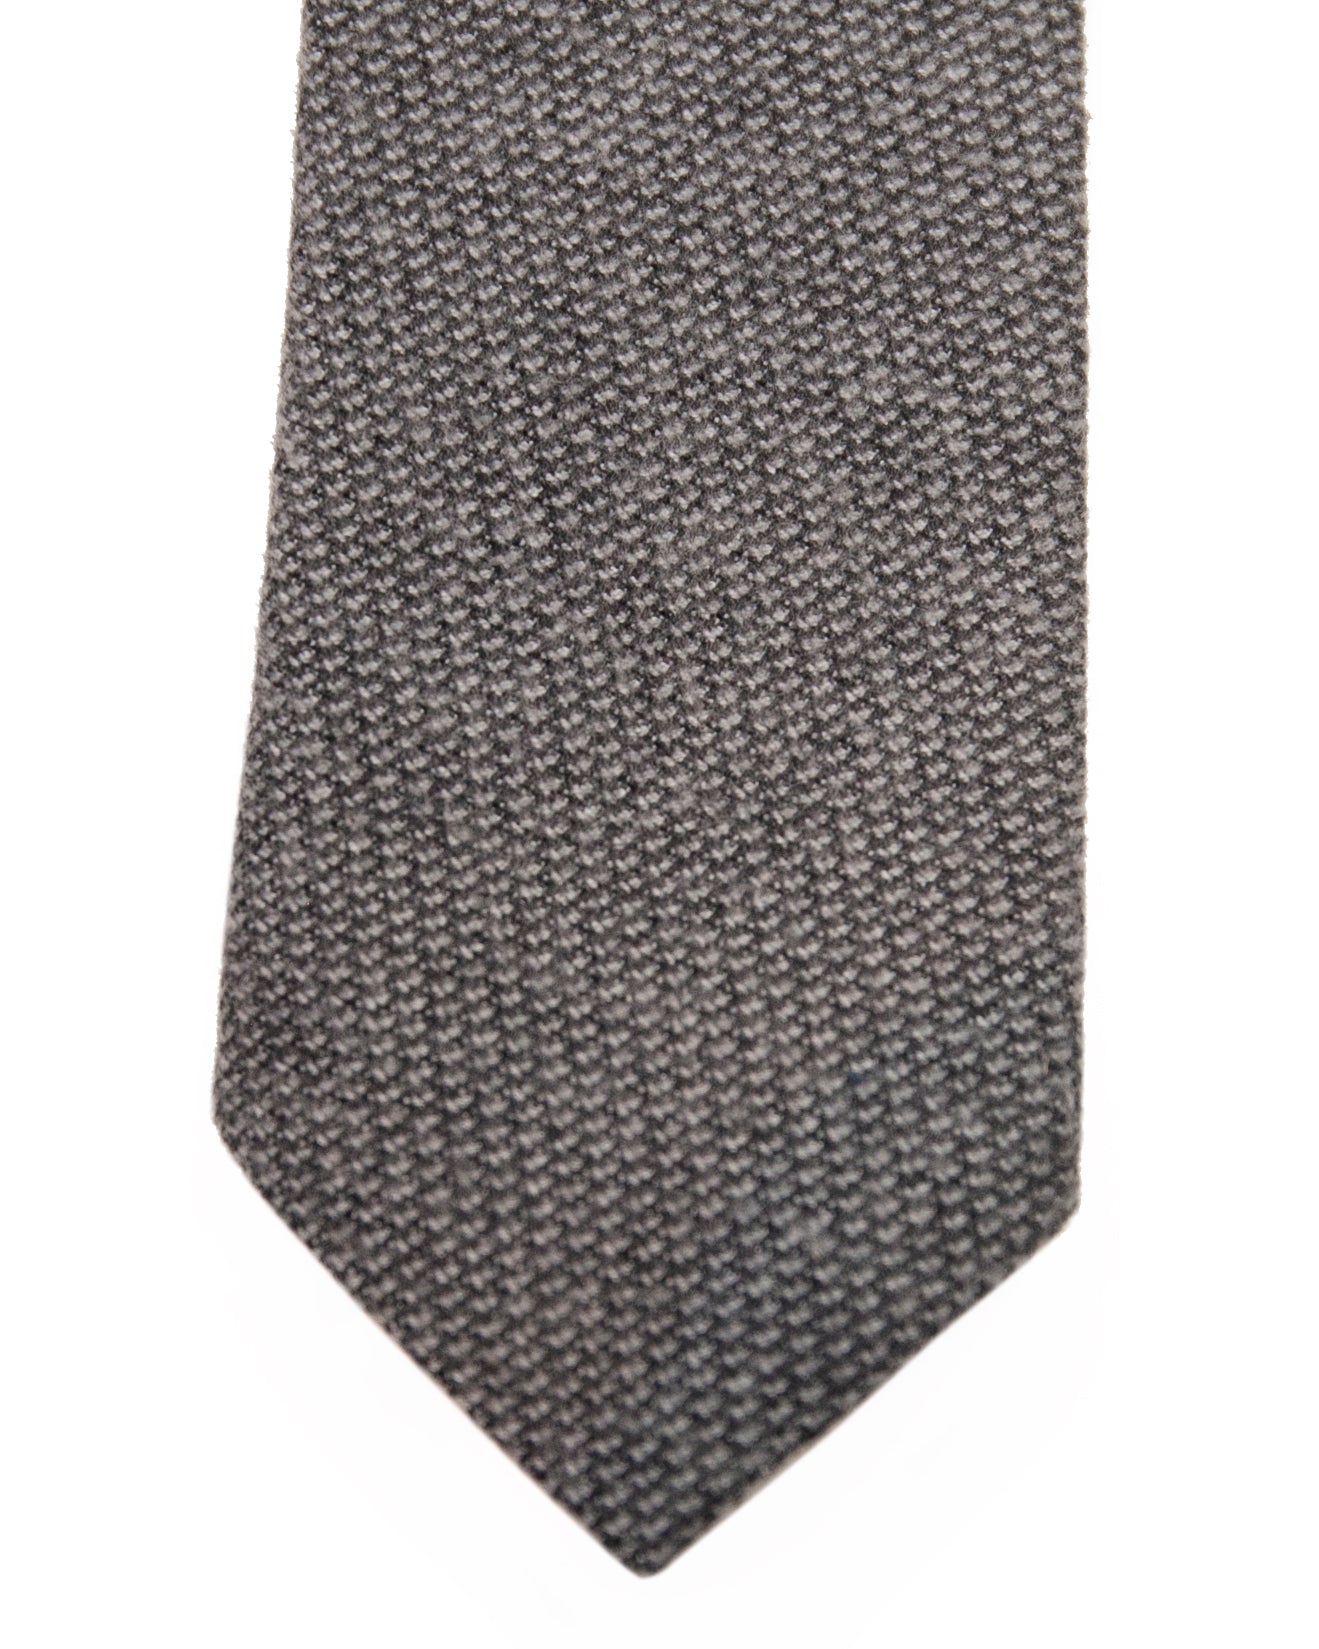 The Tie | Smokey grey flannel